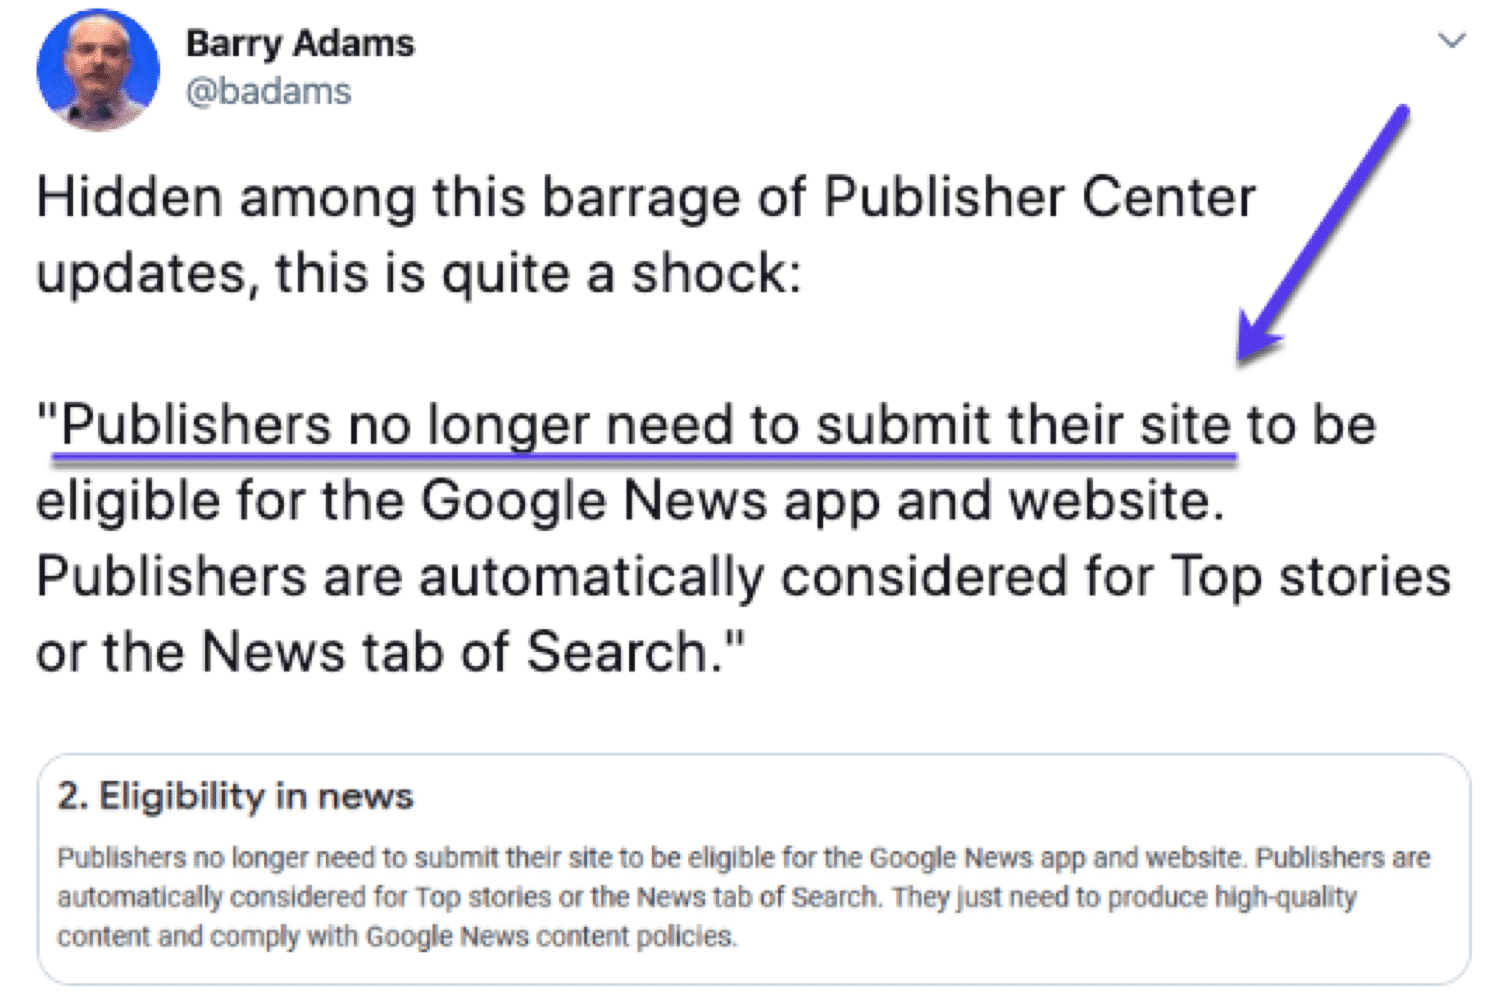 Barry Adams descubrió que los editores no necesitan enviar sus sitios...